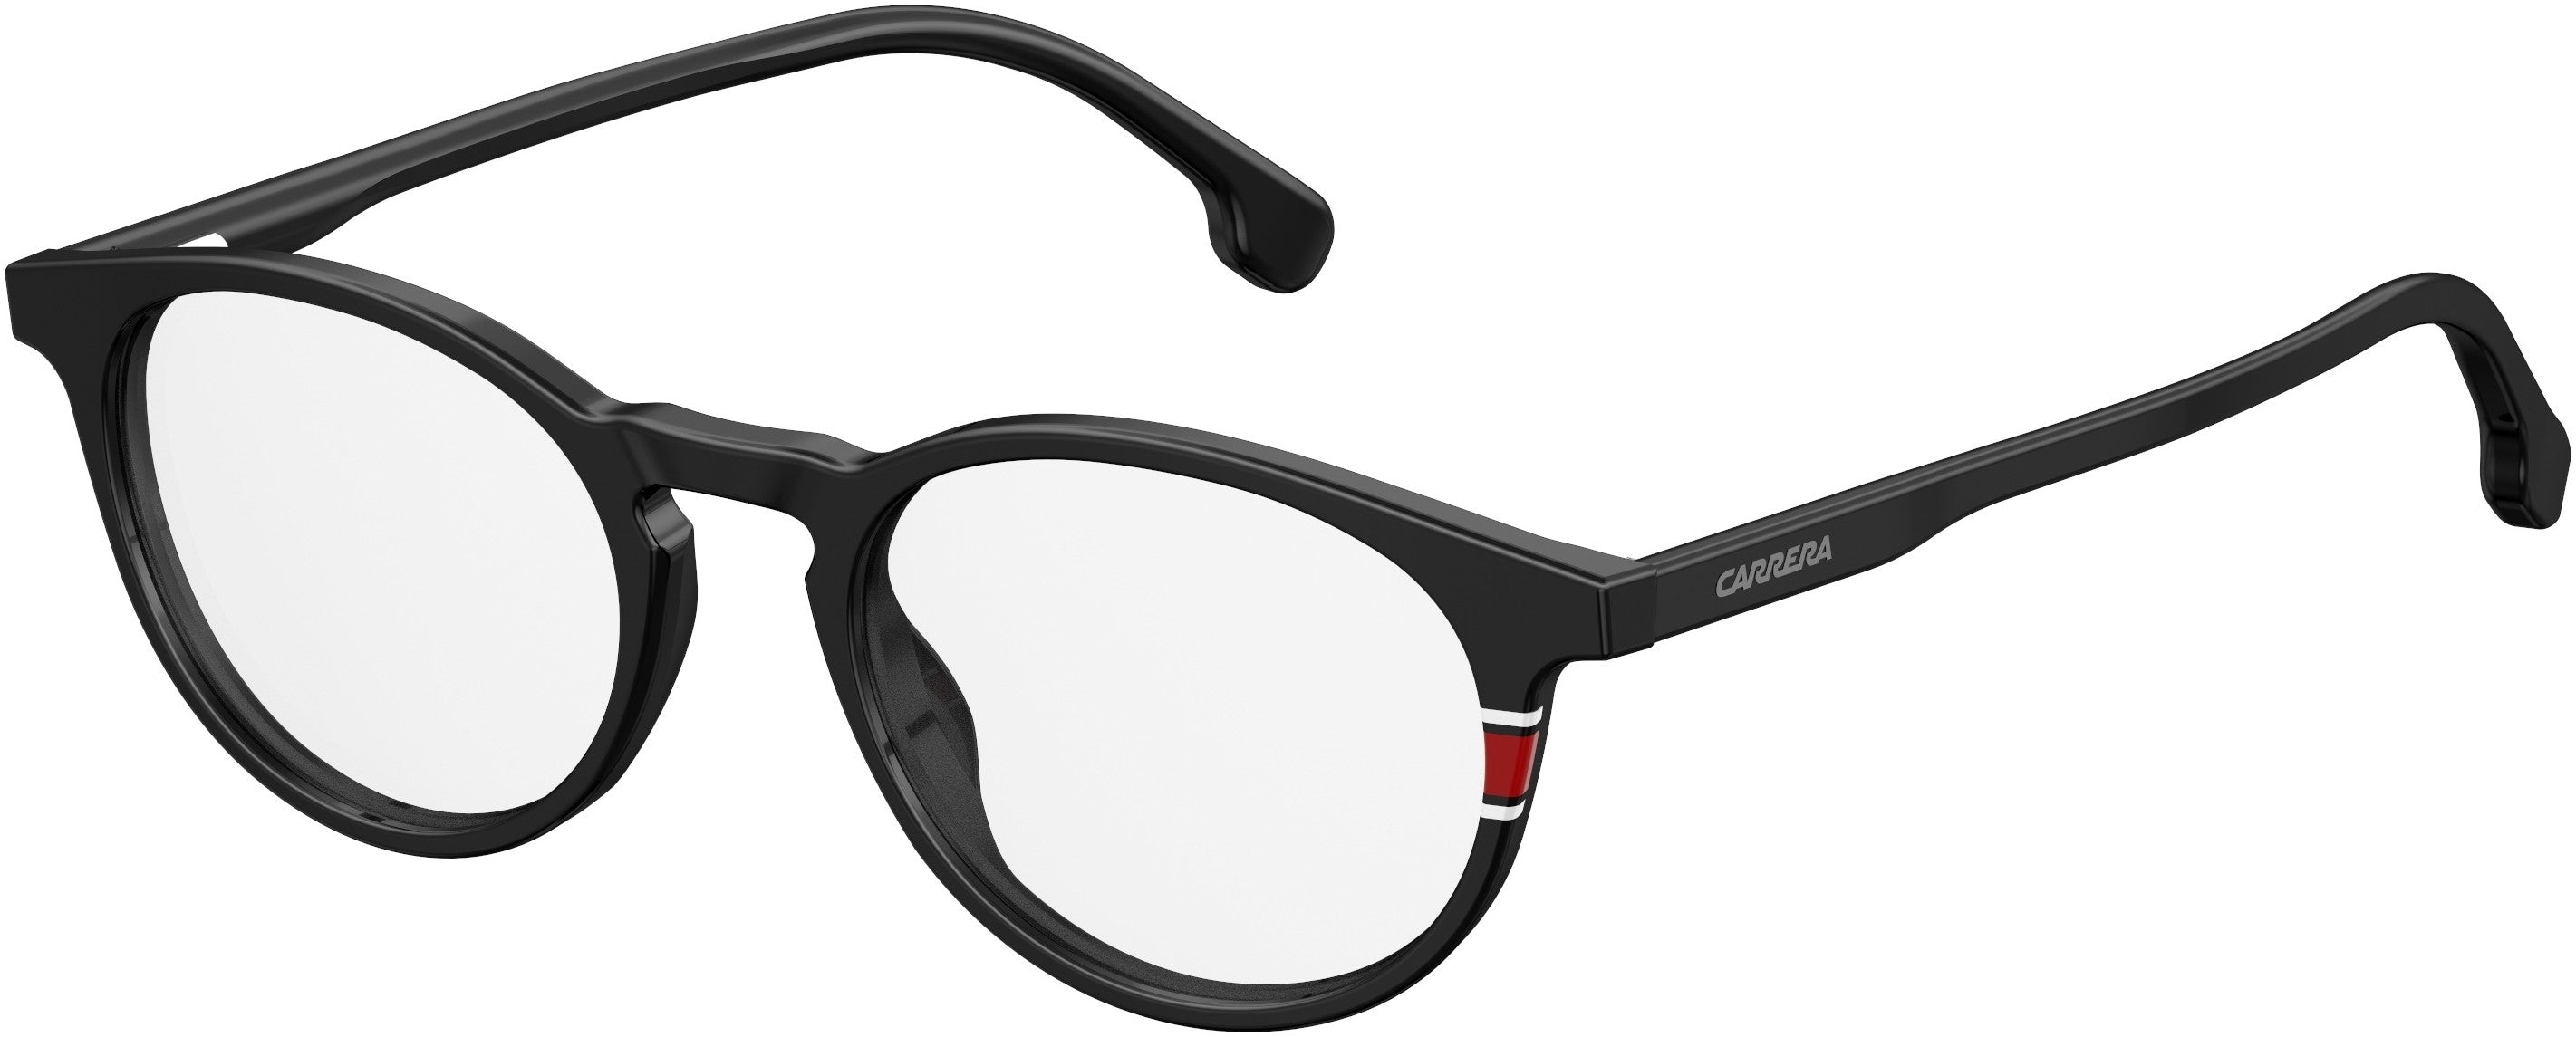  Carrera 170/V Tea Cup Eyeglasses 0807-0807  Black (00 Demo Lens)